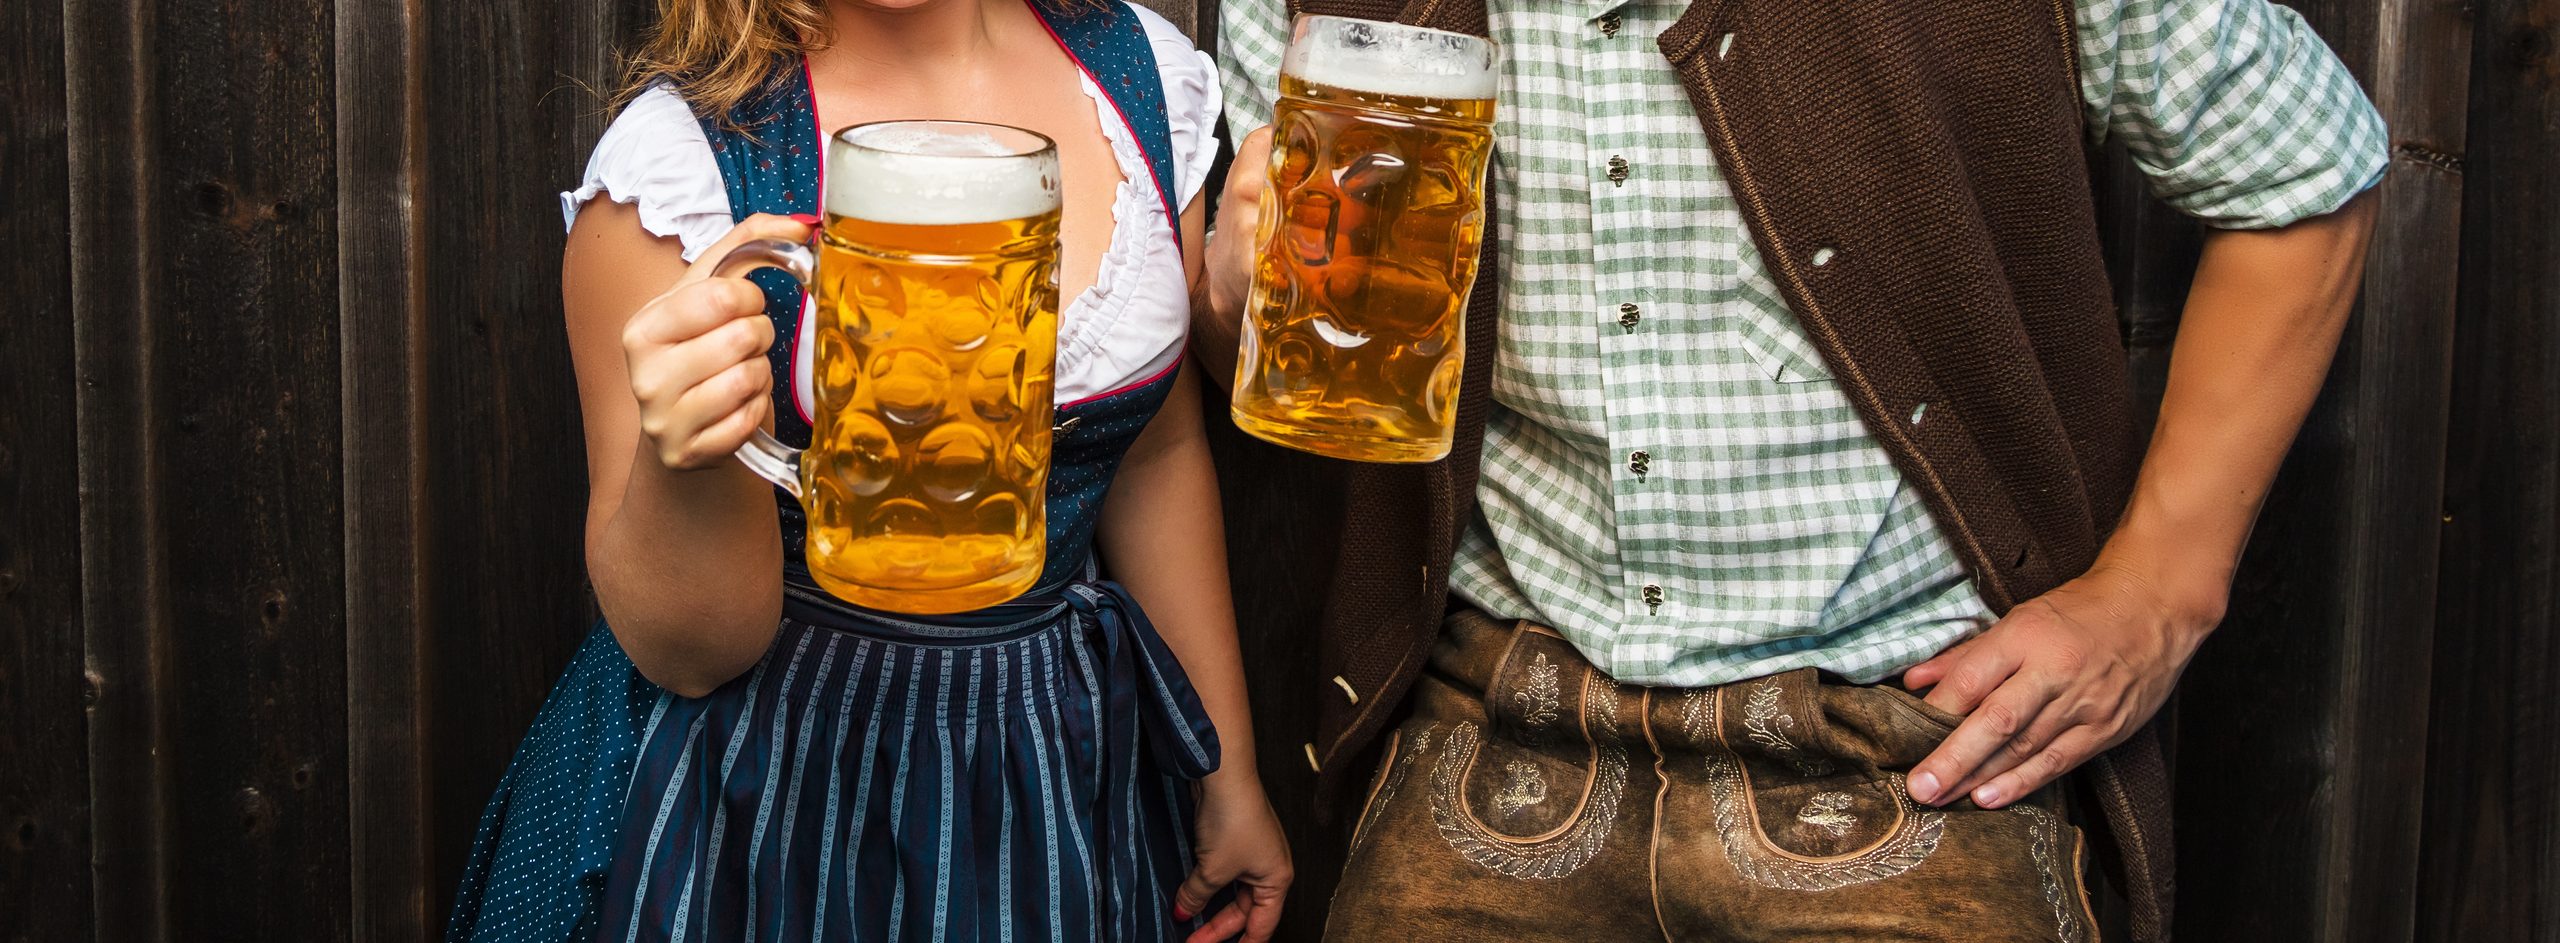 Junge Frau und Mann mit Bierglas und Brezel auf Holzhintergrund .Oktoberfest-Konzept